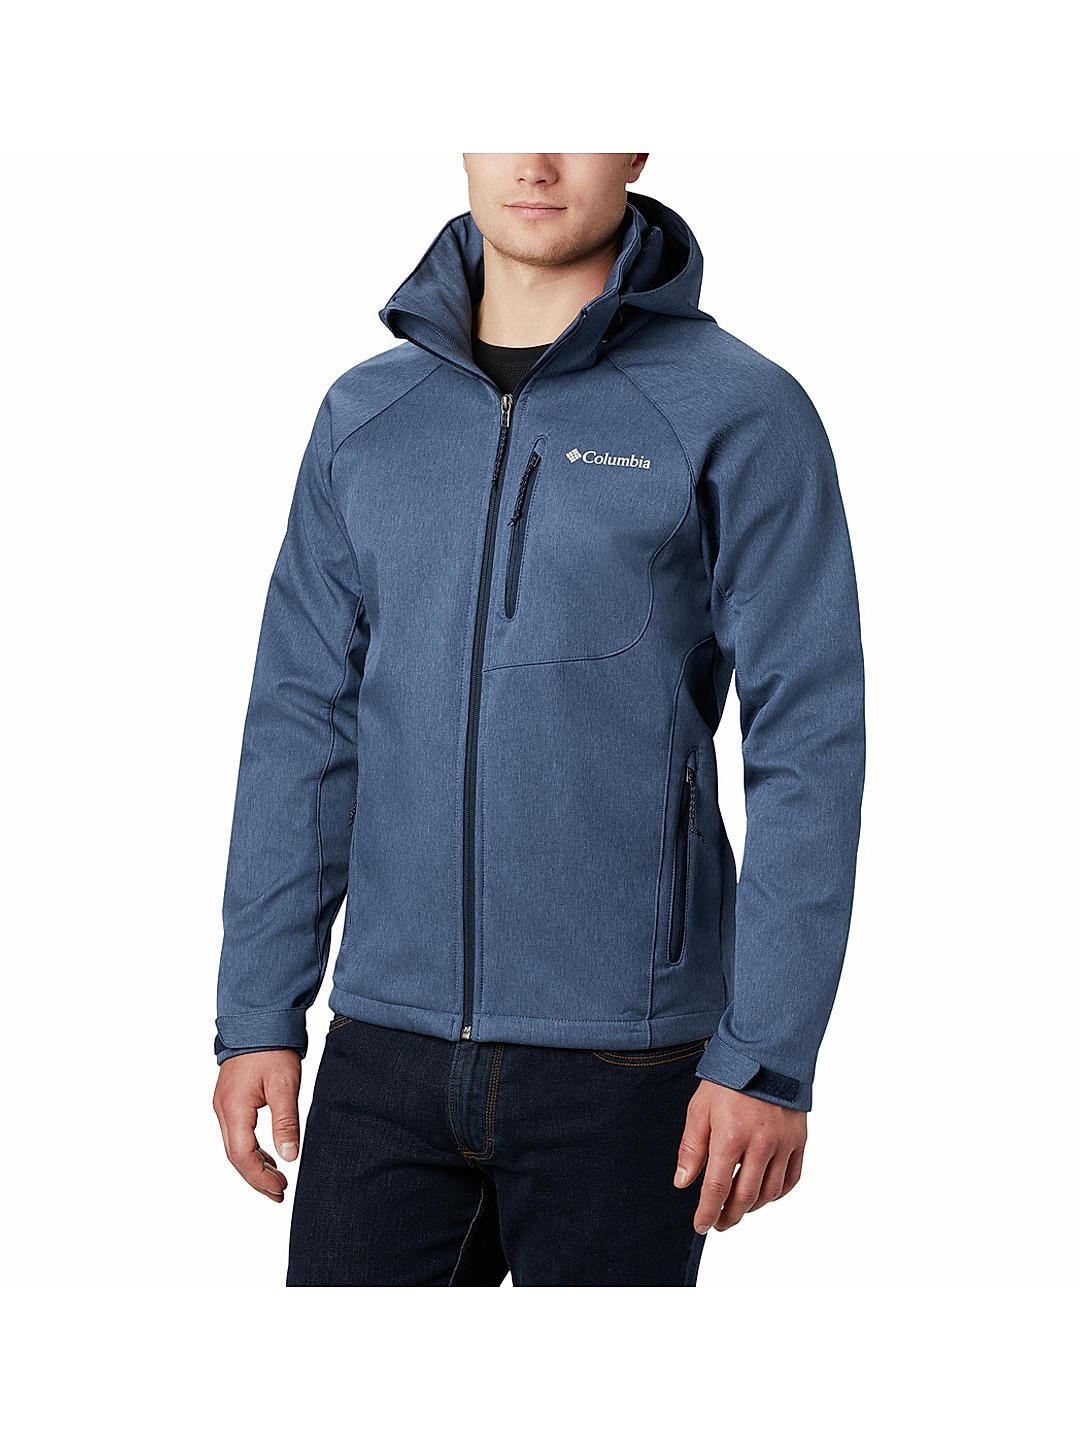 Buy Blue Cascade Ridge II Softshell Jackets for Men Online at Columbia  Sportswear